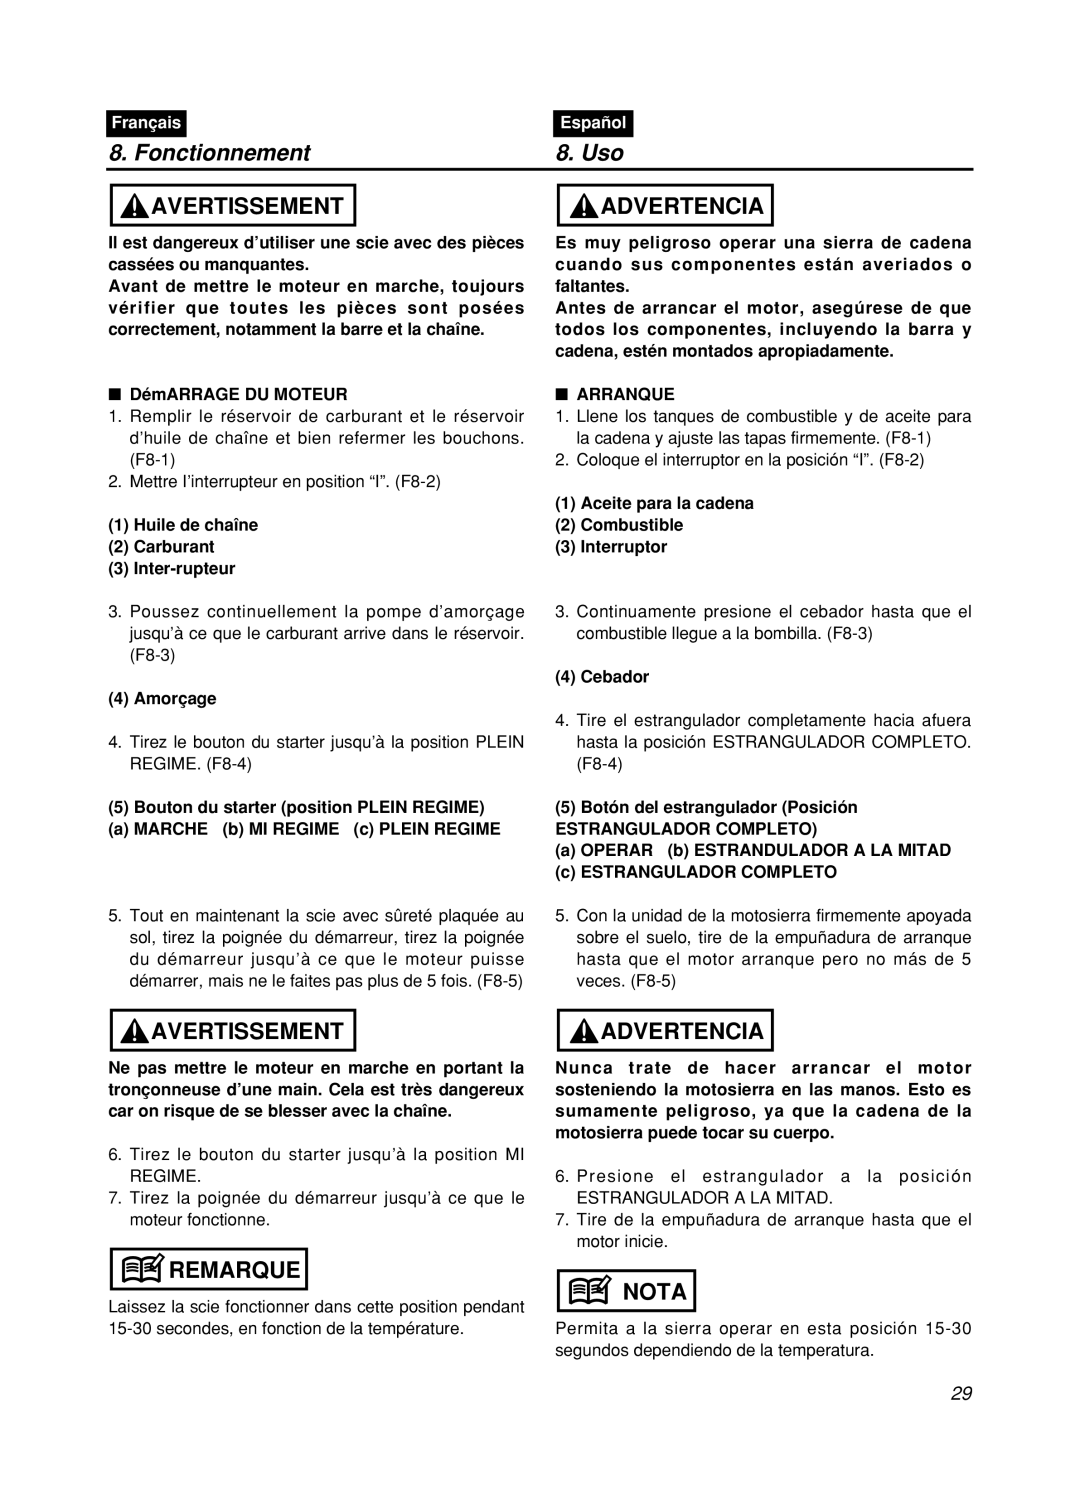 Zenoah GZ400 manual Fonctionnement, Uso, Avertissement, Advertencia, Remarque, Nota, Français, Español 